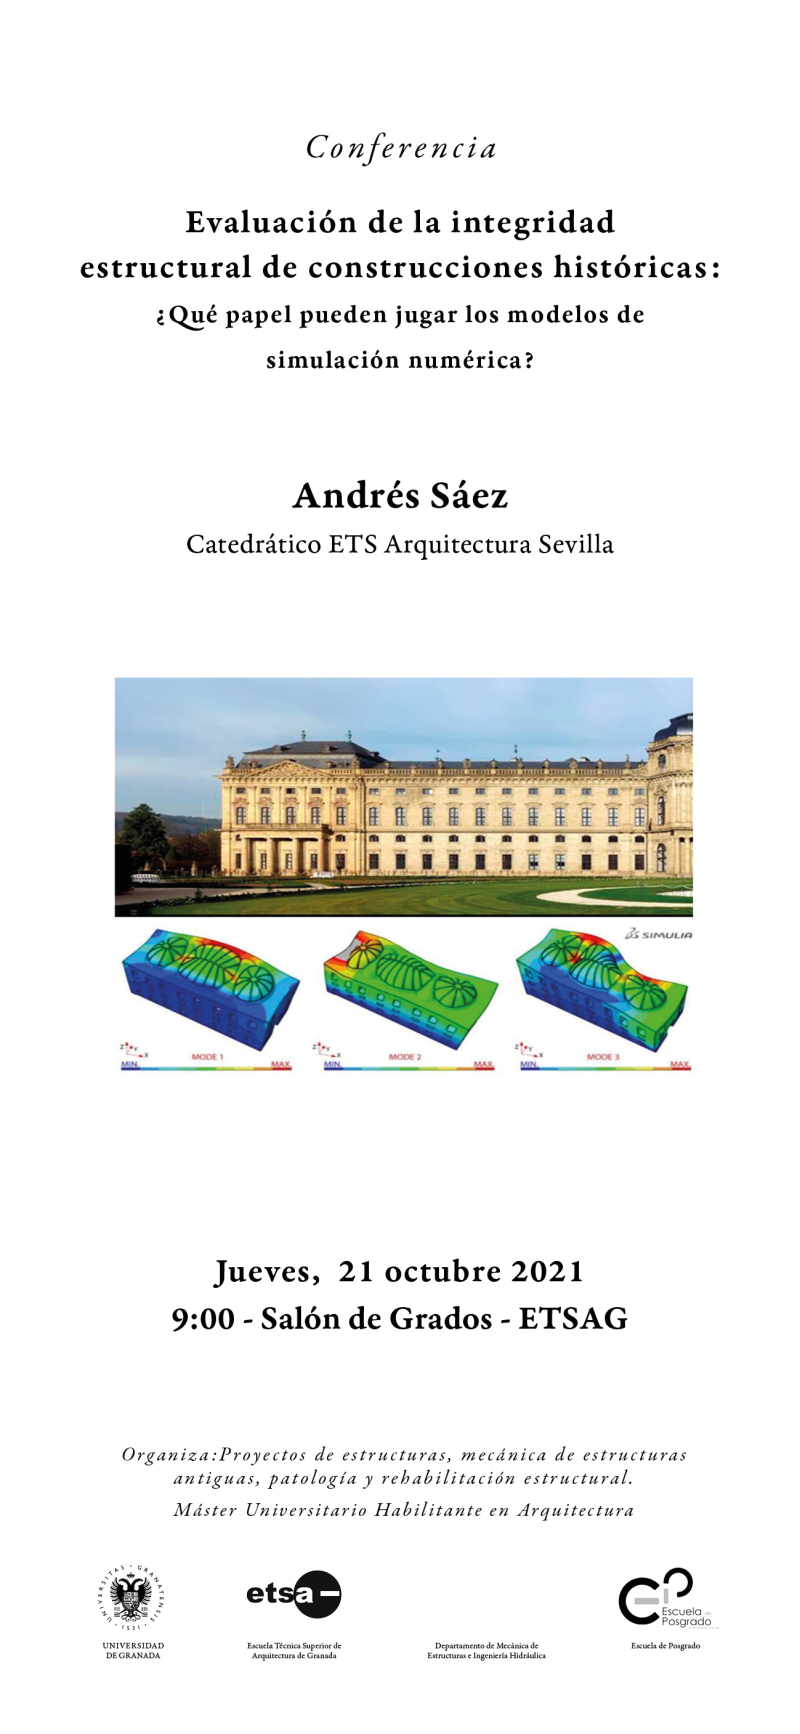 Cartel de la conferencia de Andrés Sáez